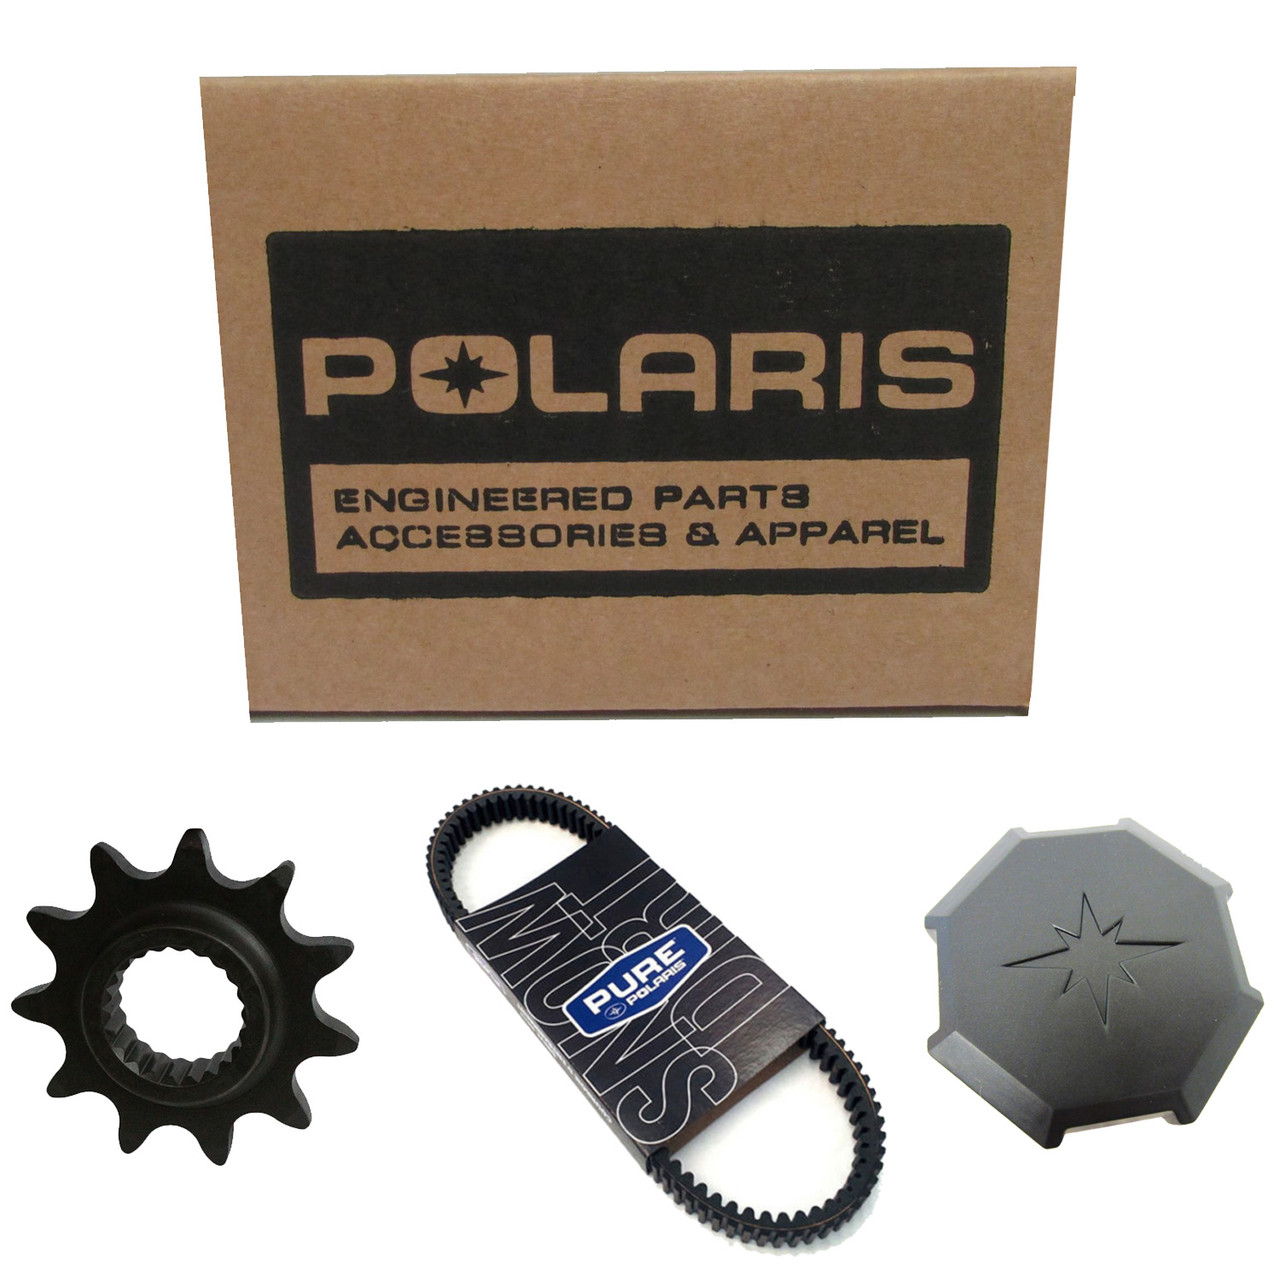 Polaris New OEM Fuel Line-86 Centimeters, 8450040-86